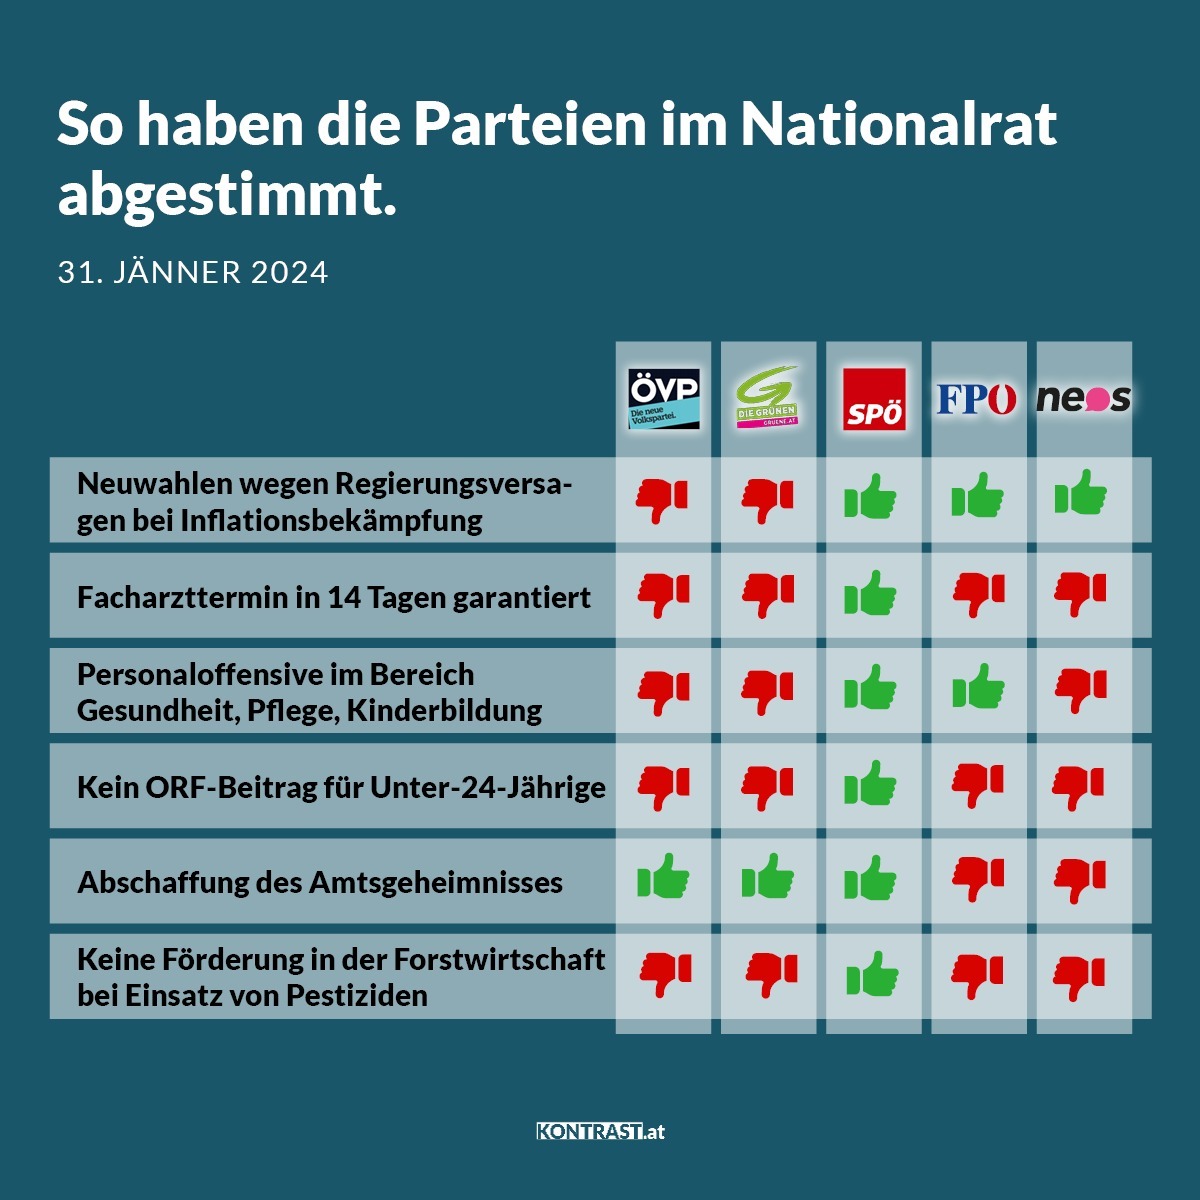 Nationalratssitzung vom 31. Jänner 2024: So haben die Parteien abgestimmt